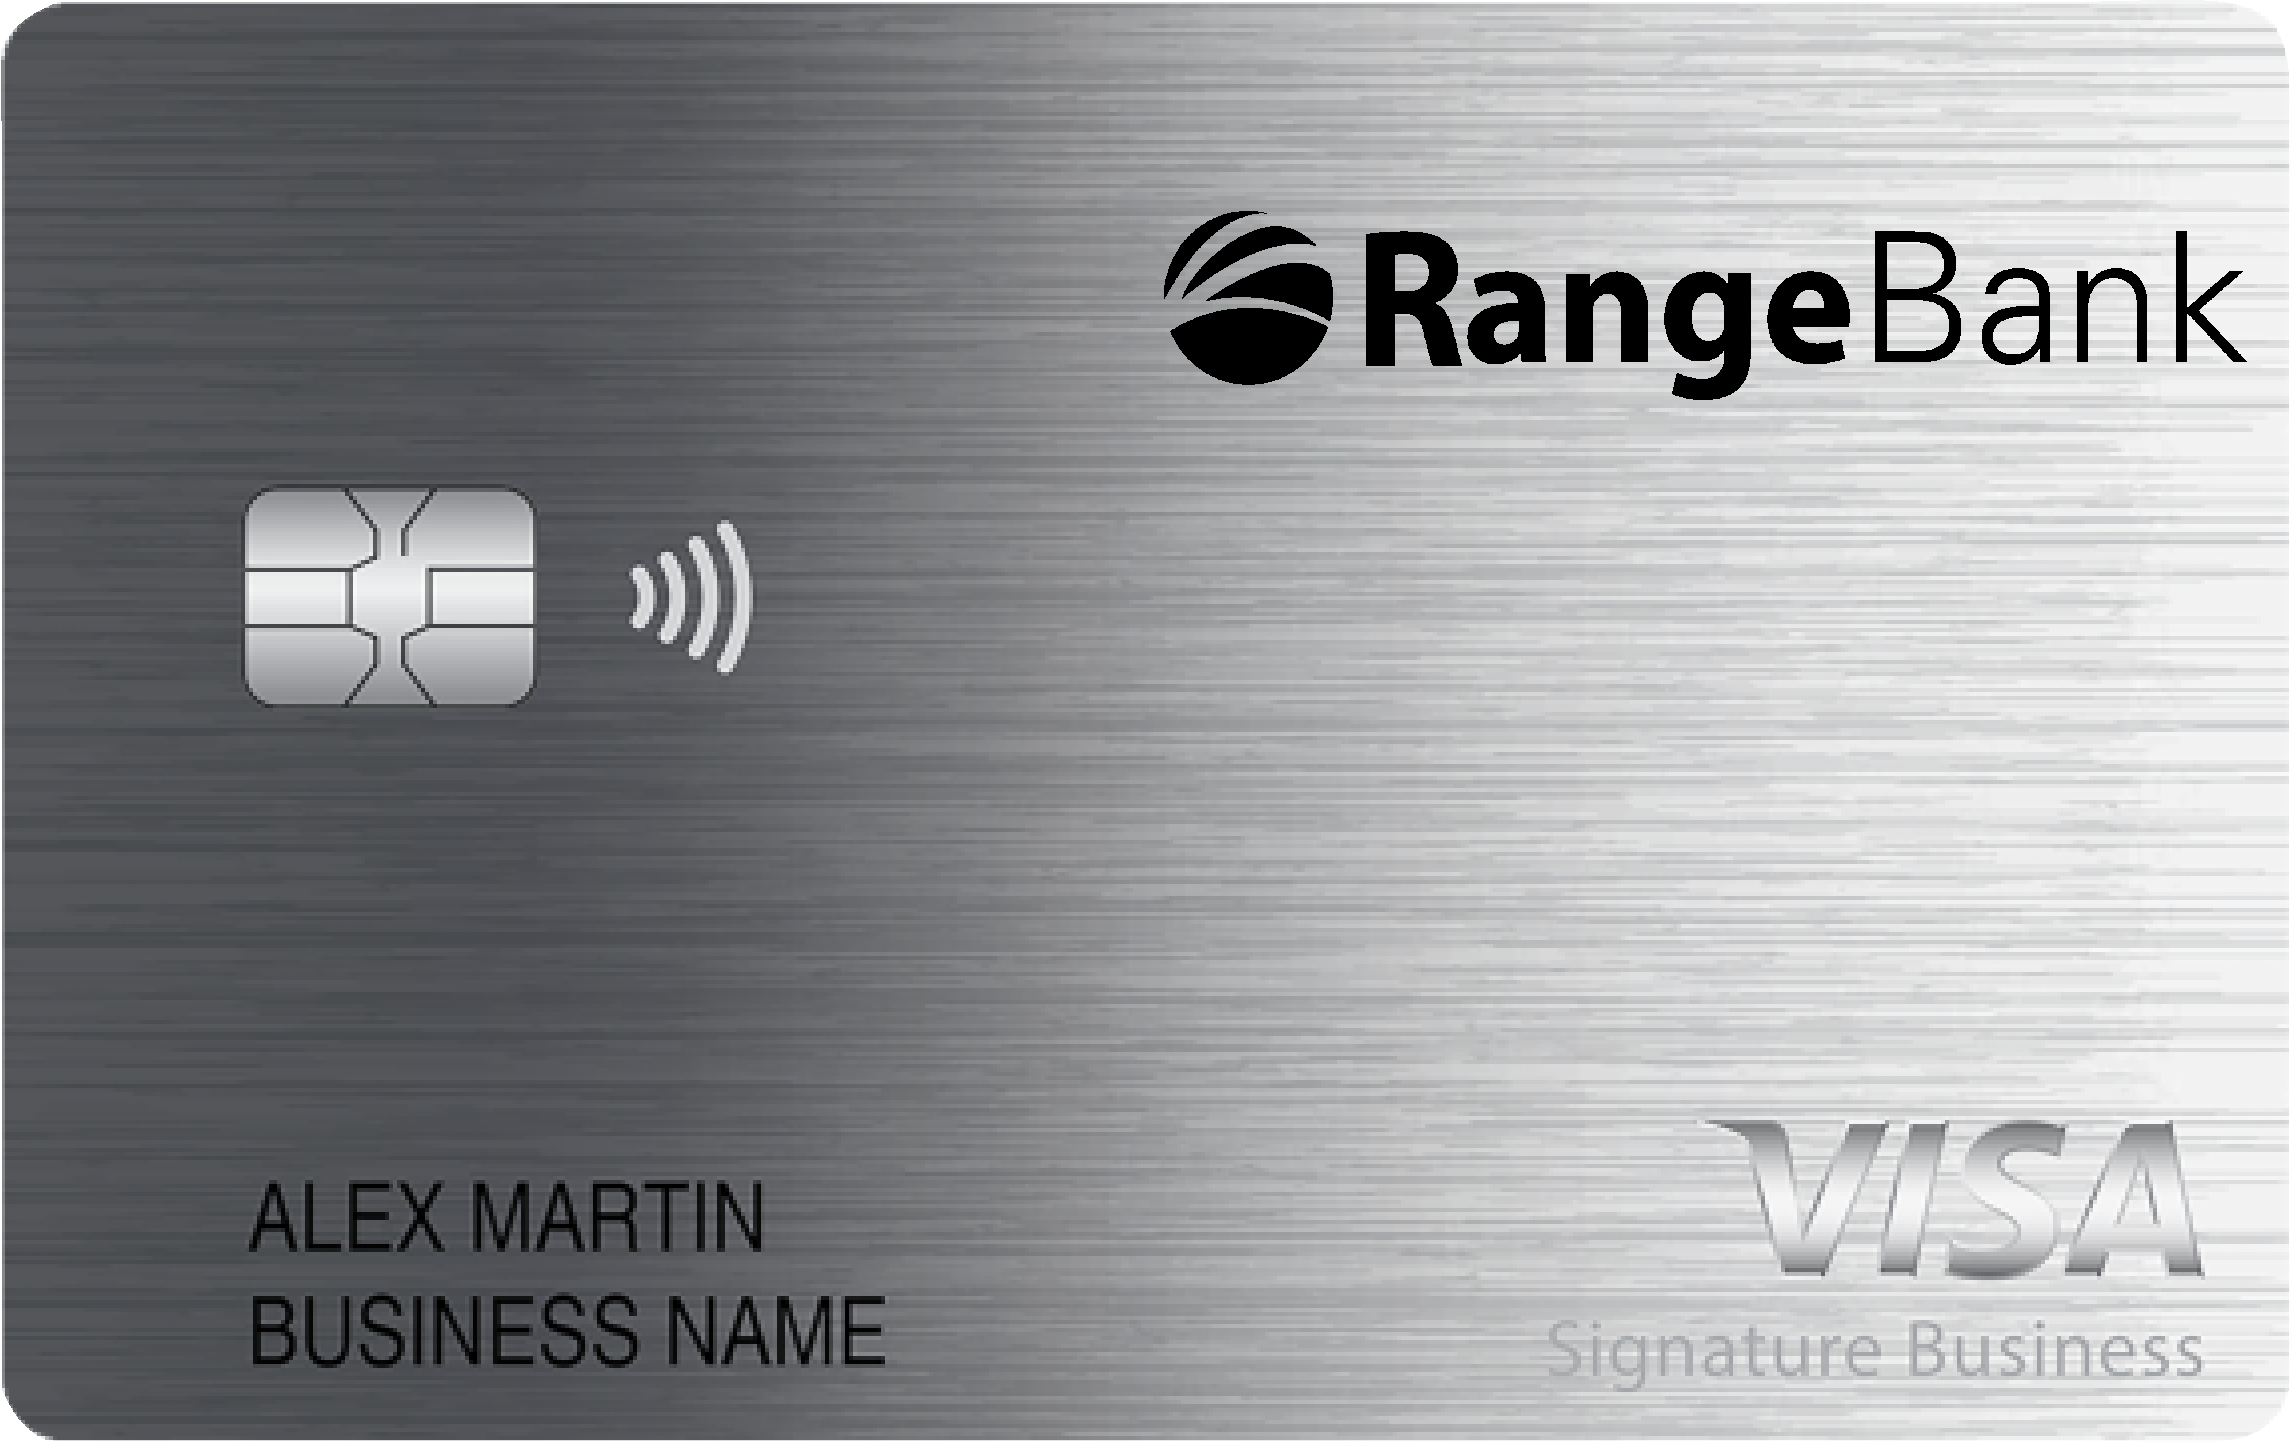 Range Bank Smart Business Rewards Card